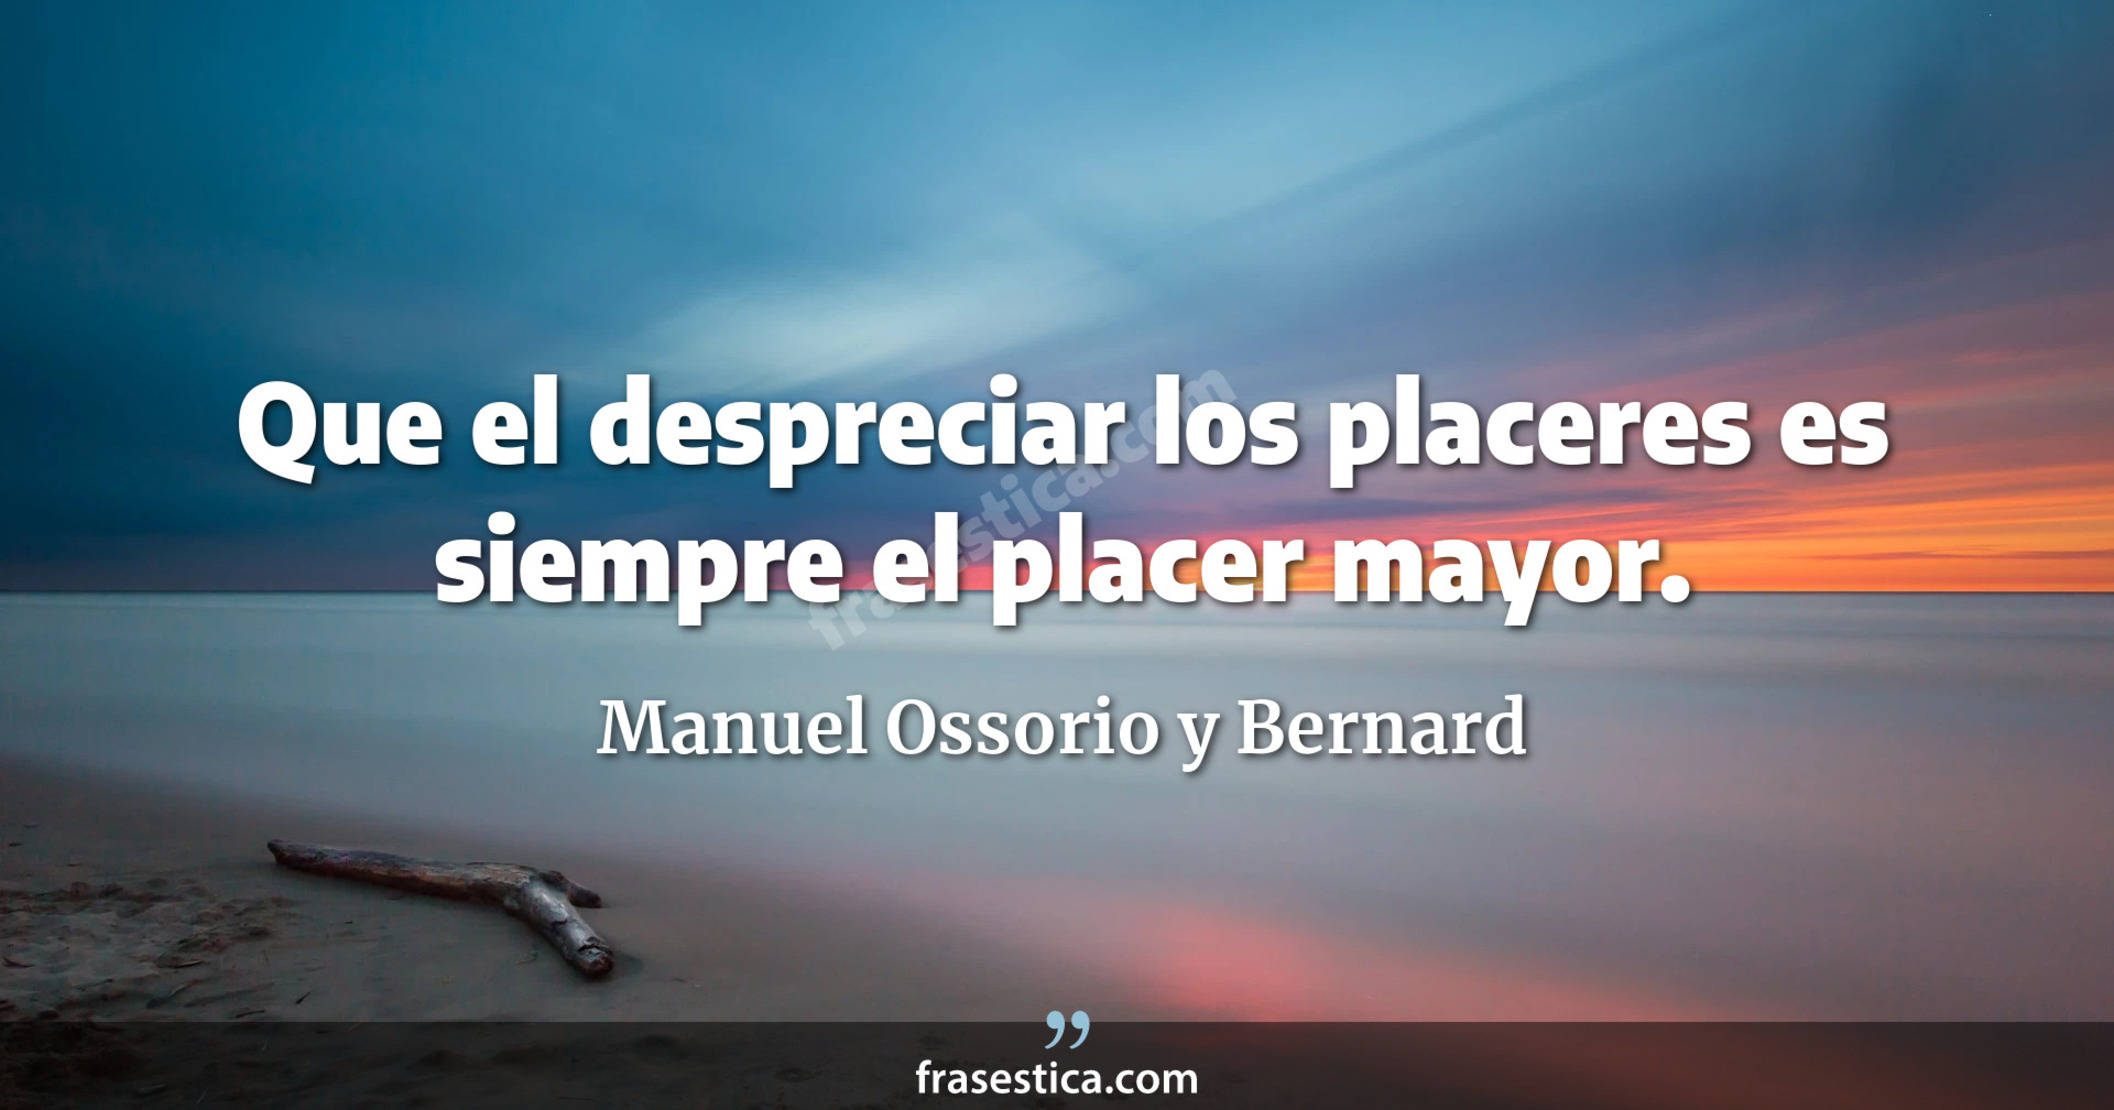 Que el despreciar los placeres es siempre el placer mayor. - Manuel Ossorio y Bernard